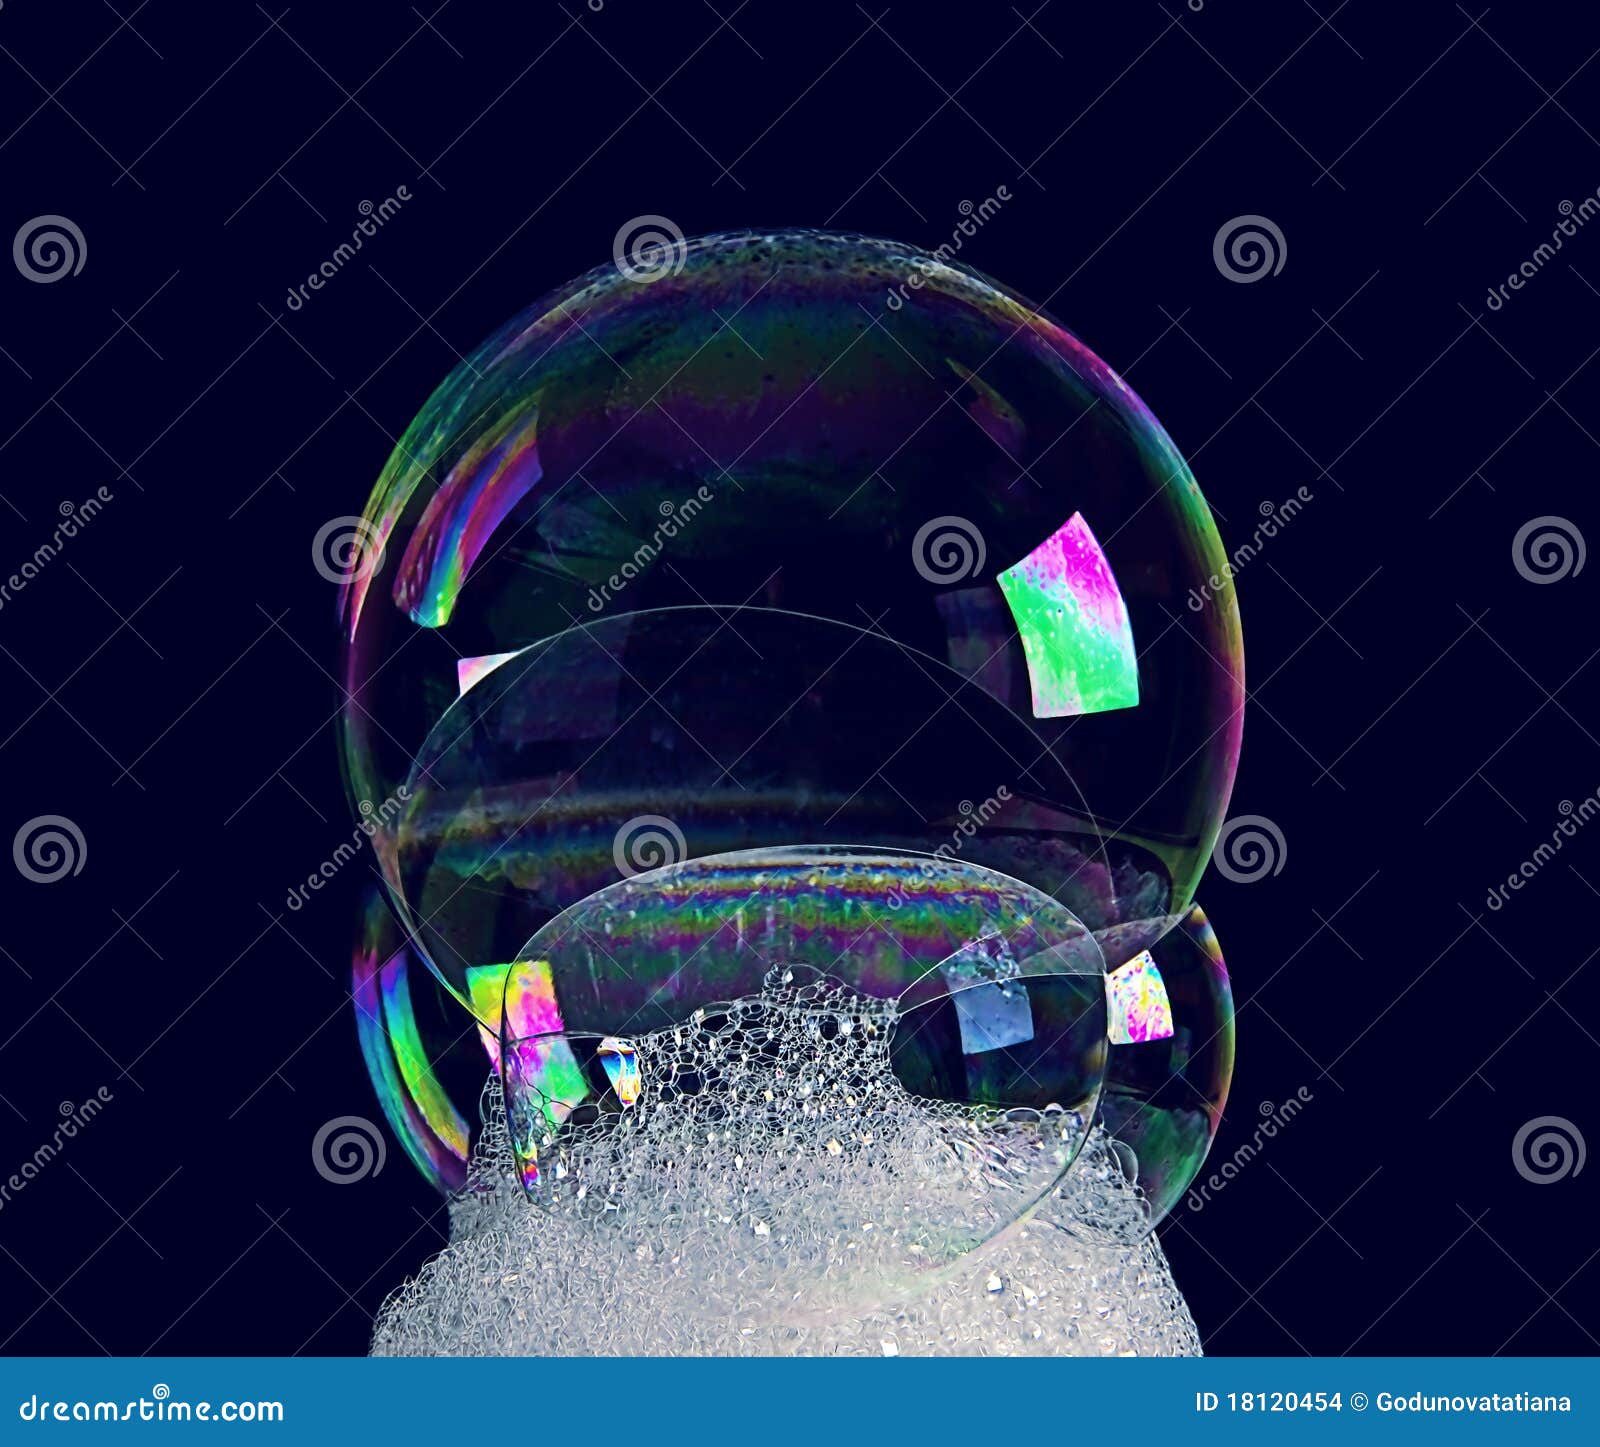 soap bubbles 2